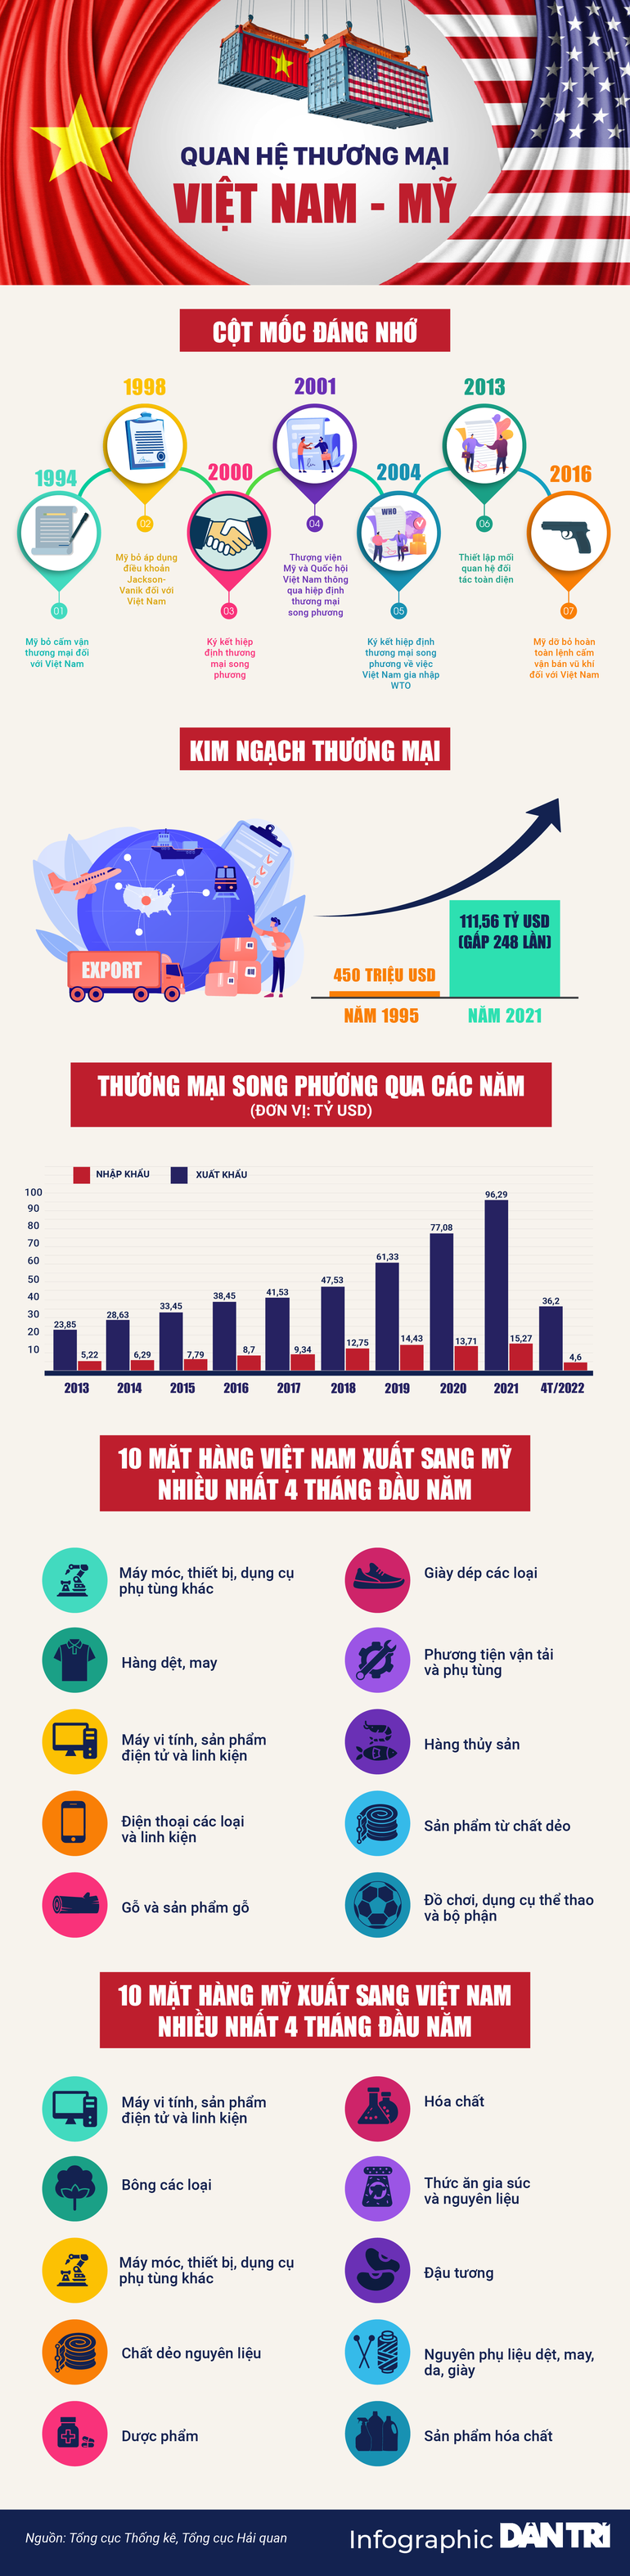  Quan hệ thương mại Việt Nam - Mỹ qua các con số  - 1